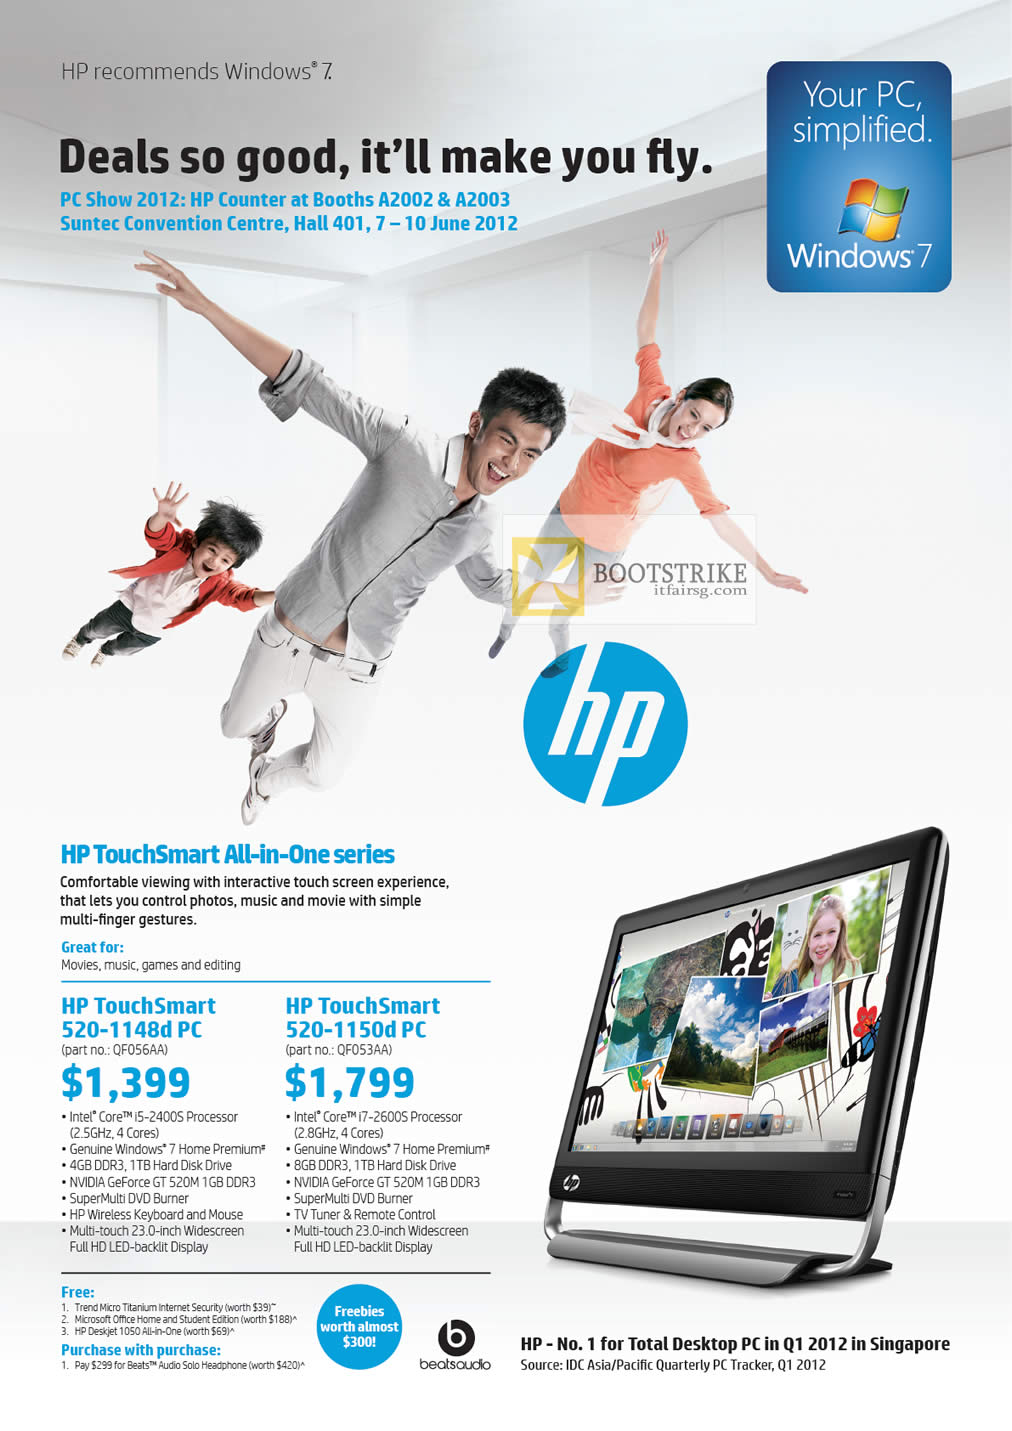 PC SHOW 2012 price list image brochure of HP Desktop PC AIO TouchSmart 520-1148d, 520-1150d